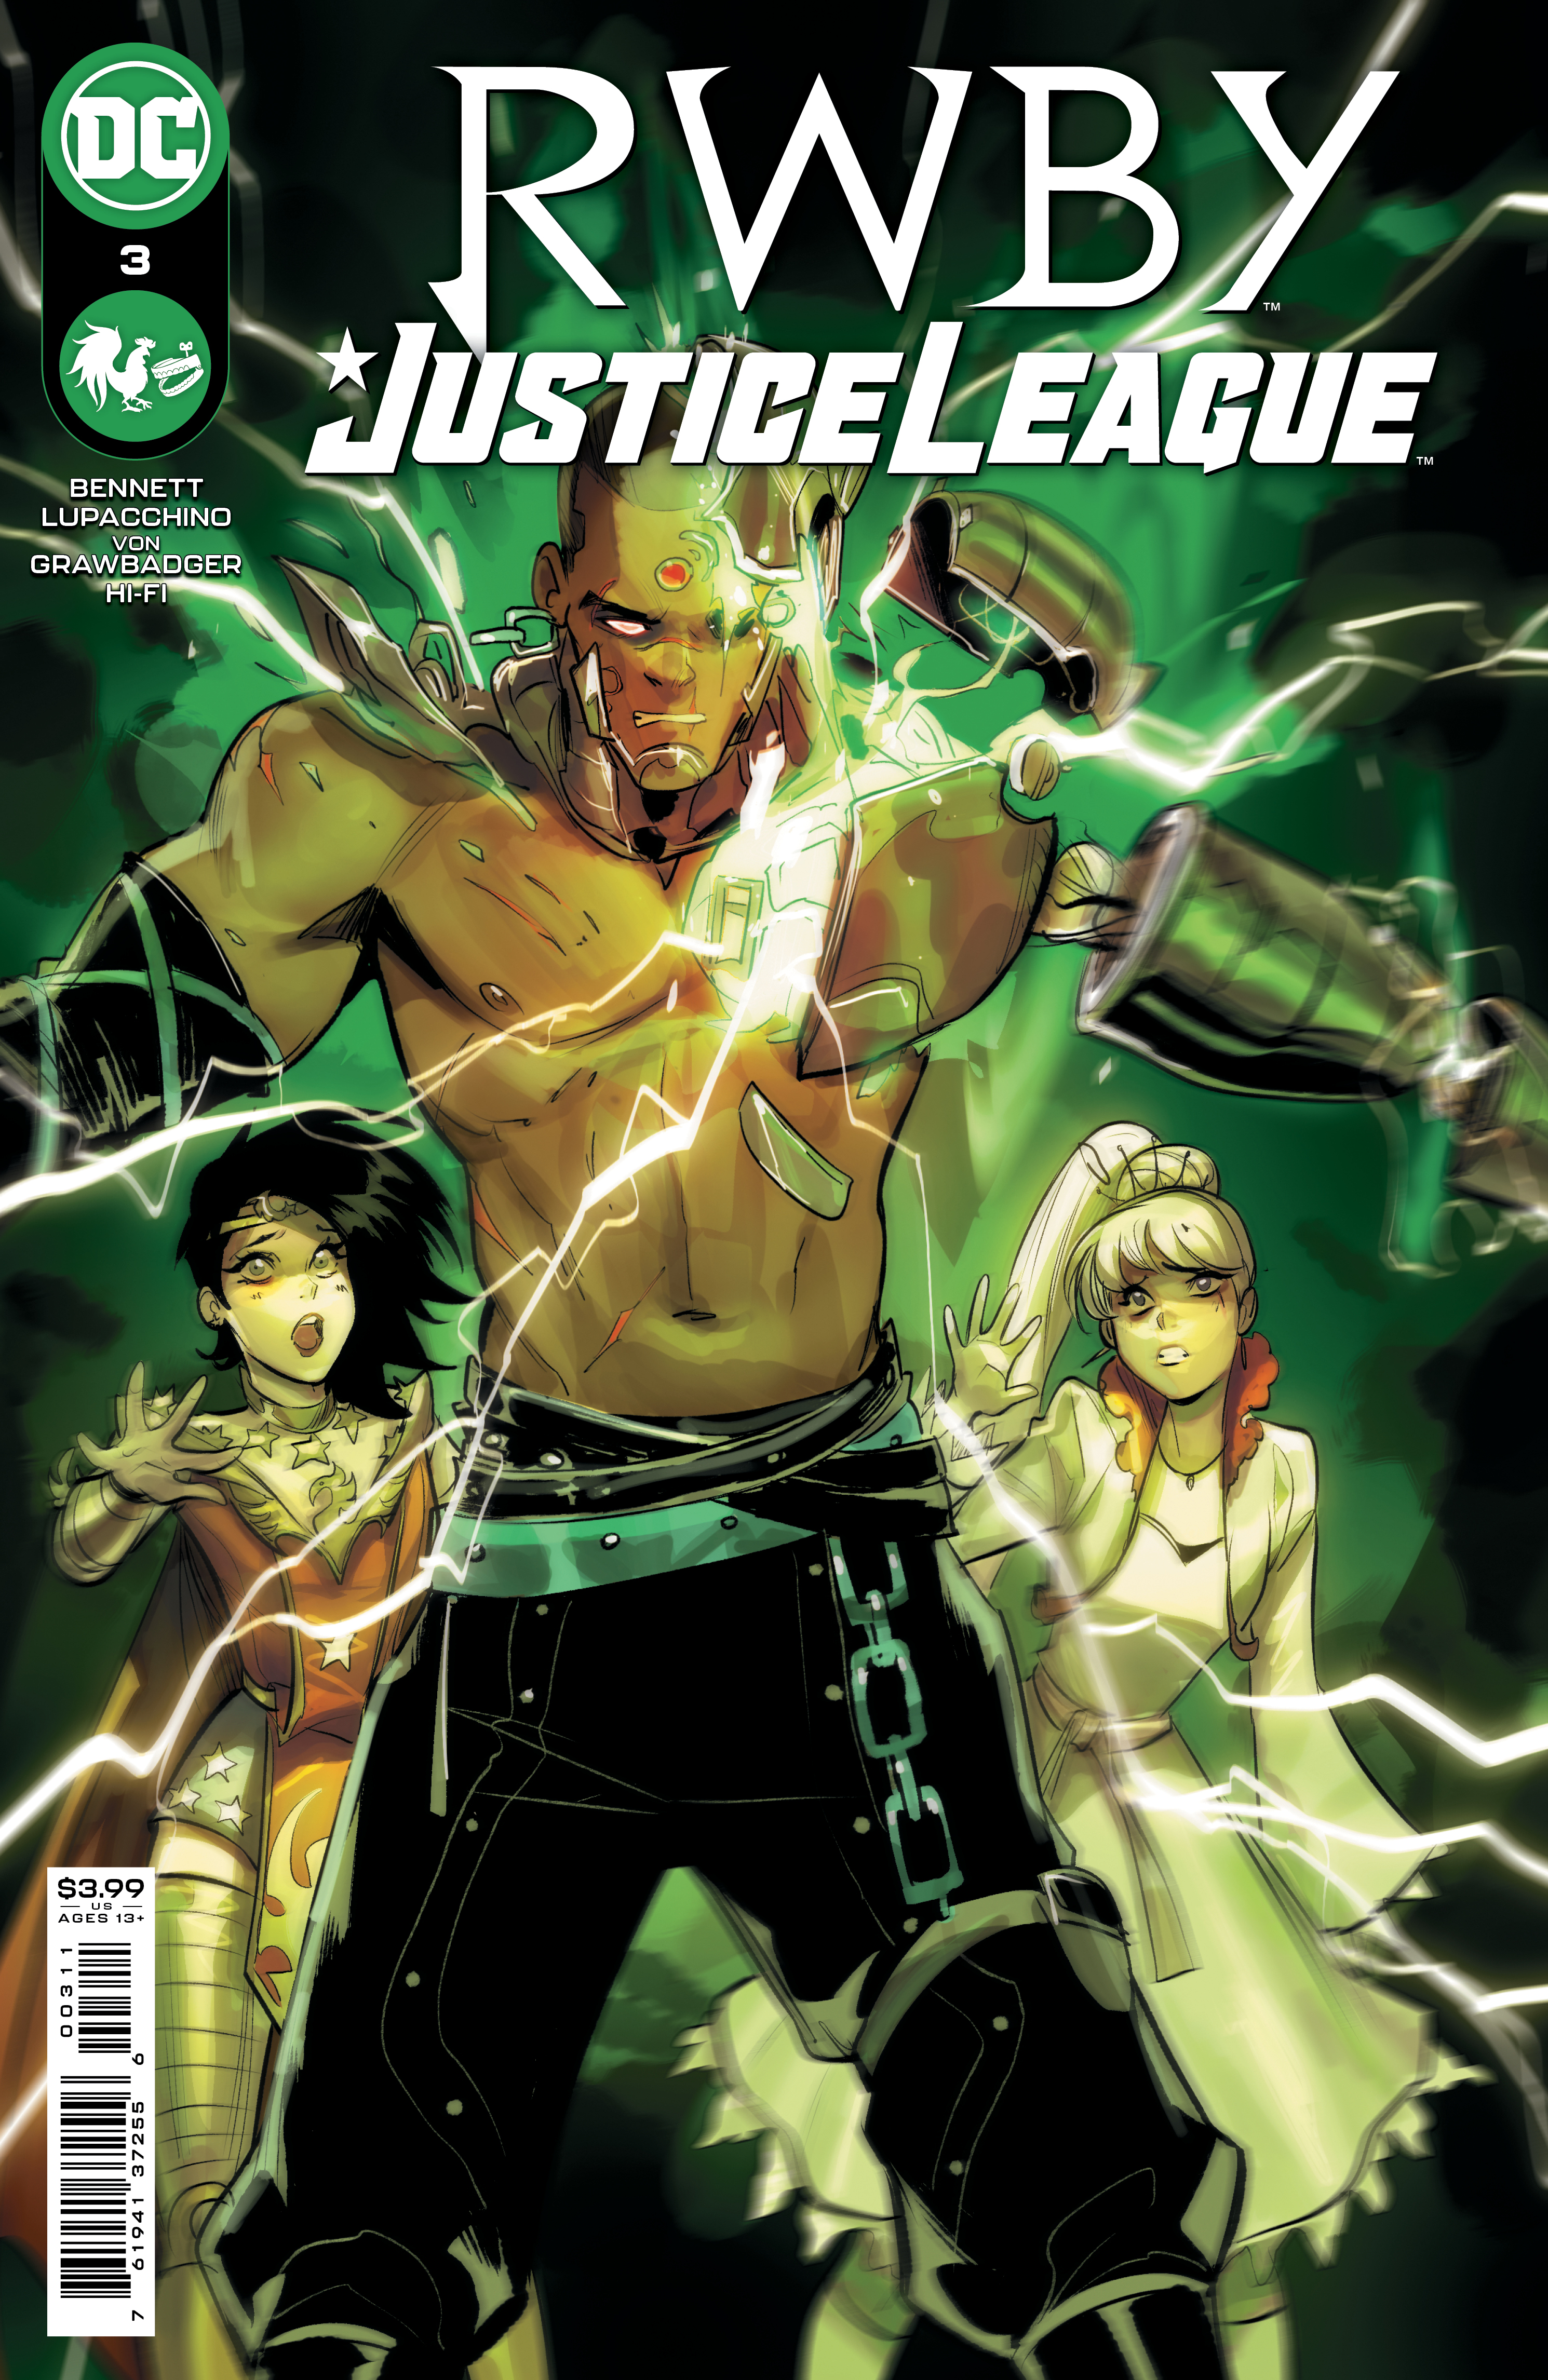 RWBY Justice League #3 Cover A Mirka Andolfo (Of 7)